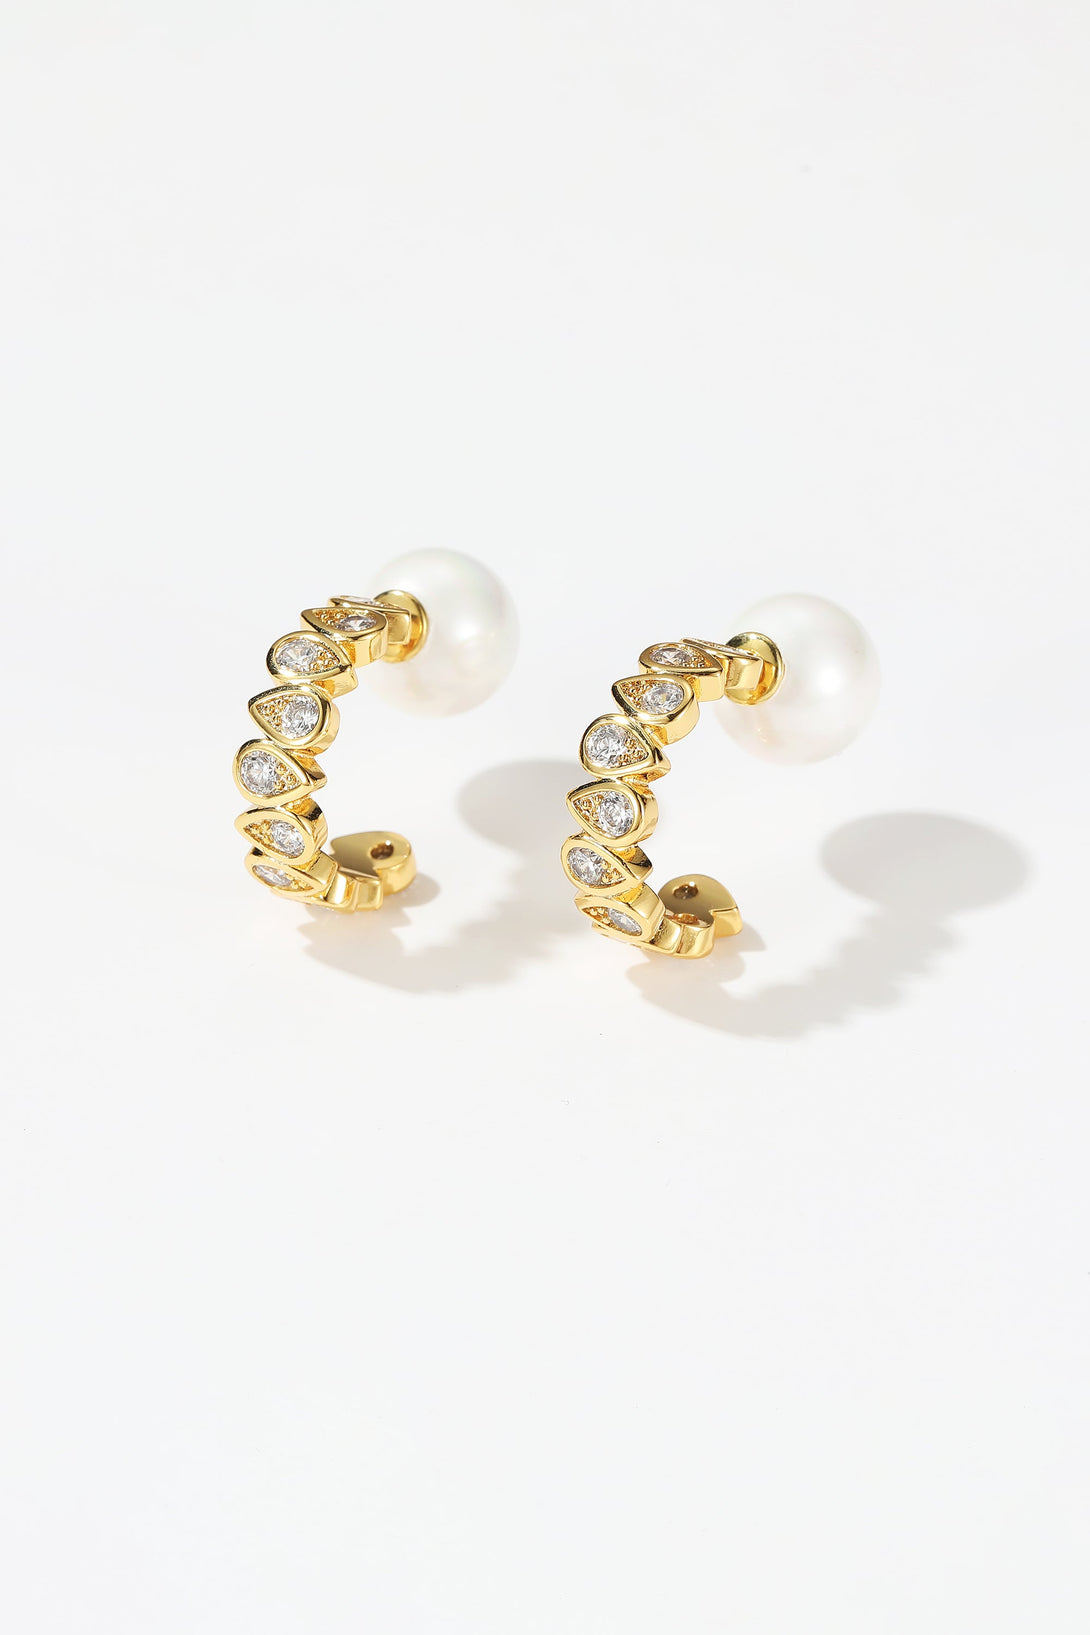 Gold Teardrop Zirconia Earrings - Classicharms